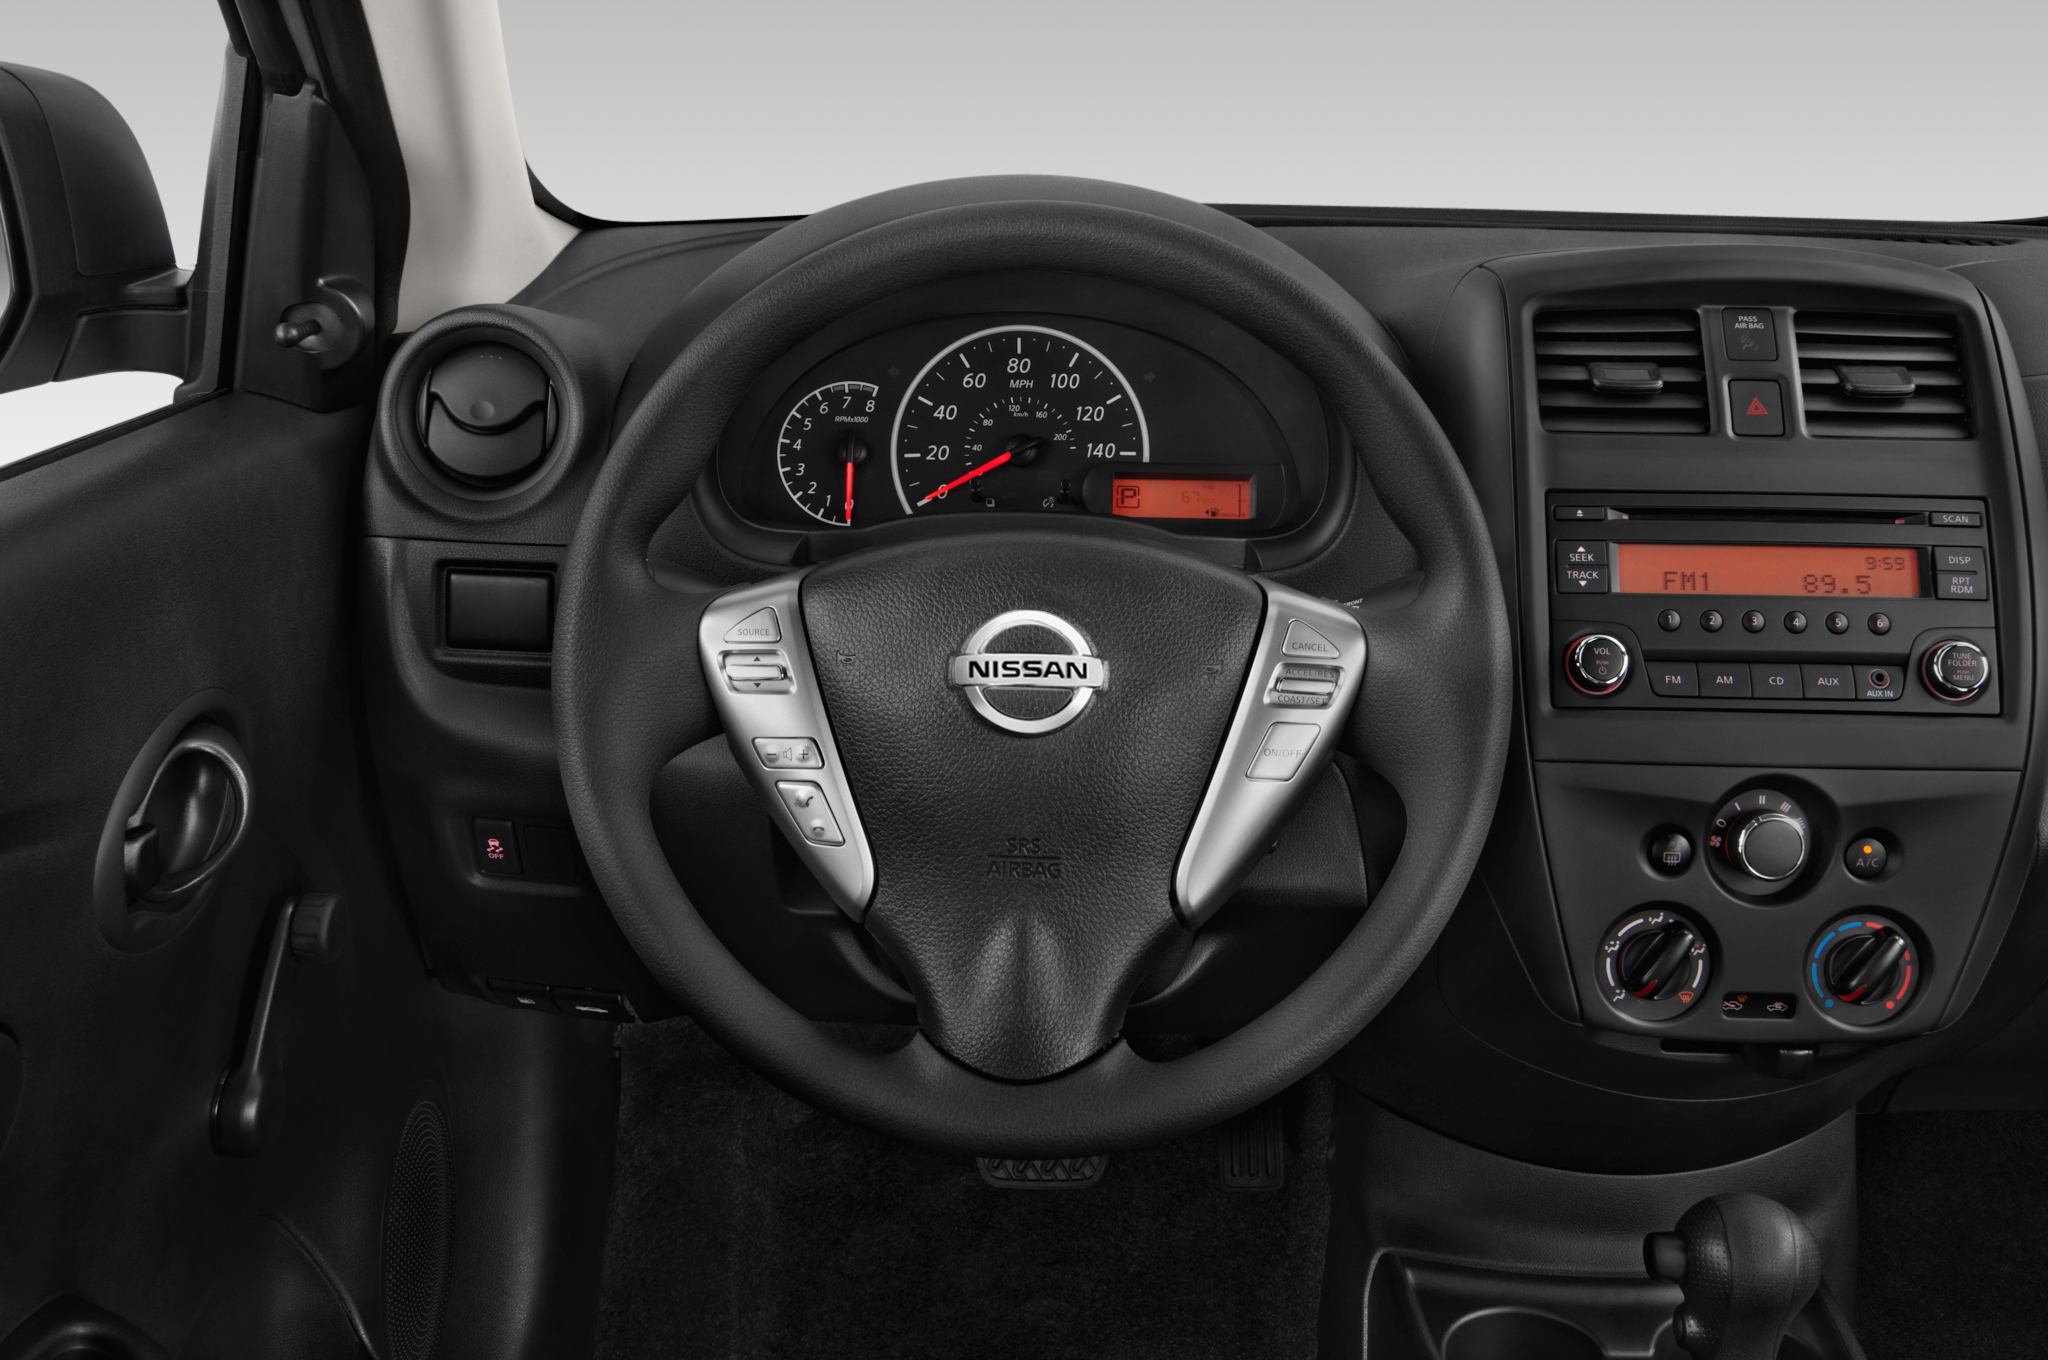 Nissan Versa II 2012 - 2014 Sedan #5